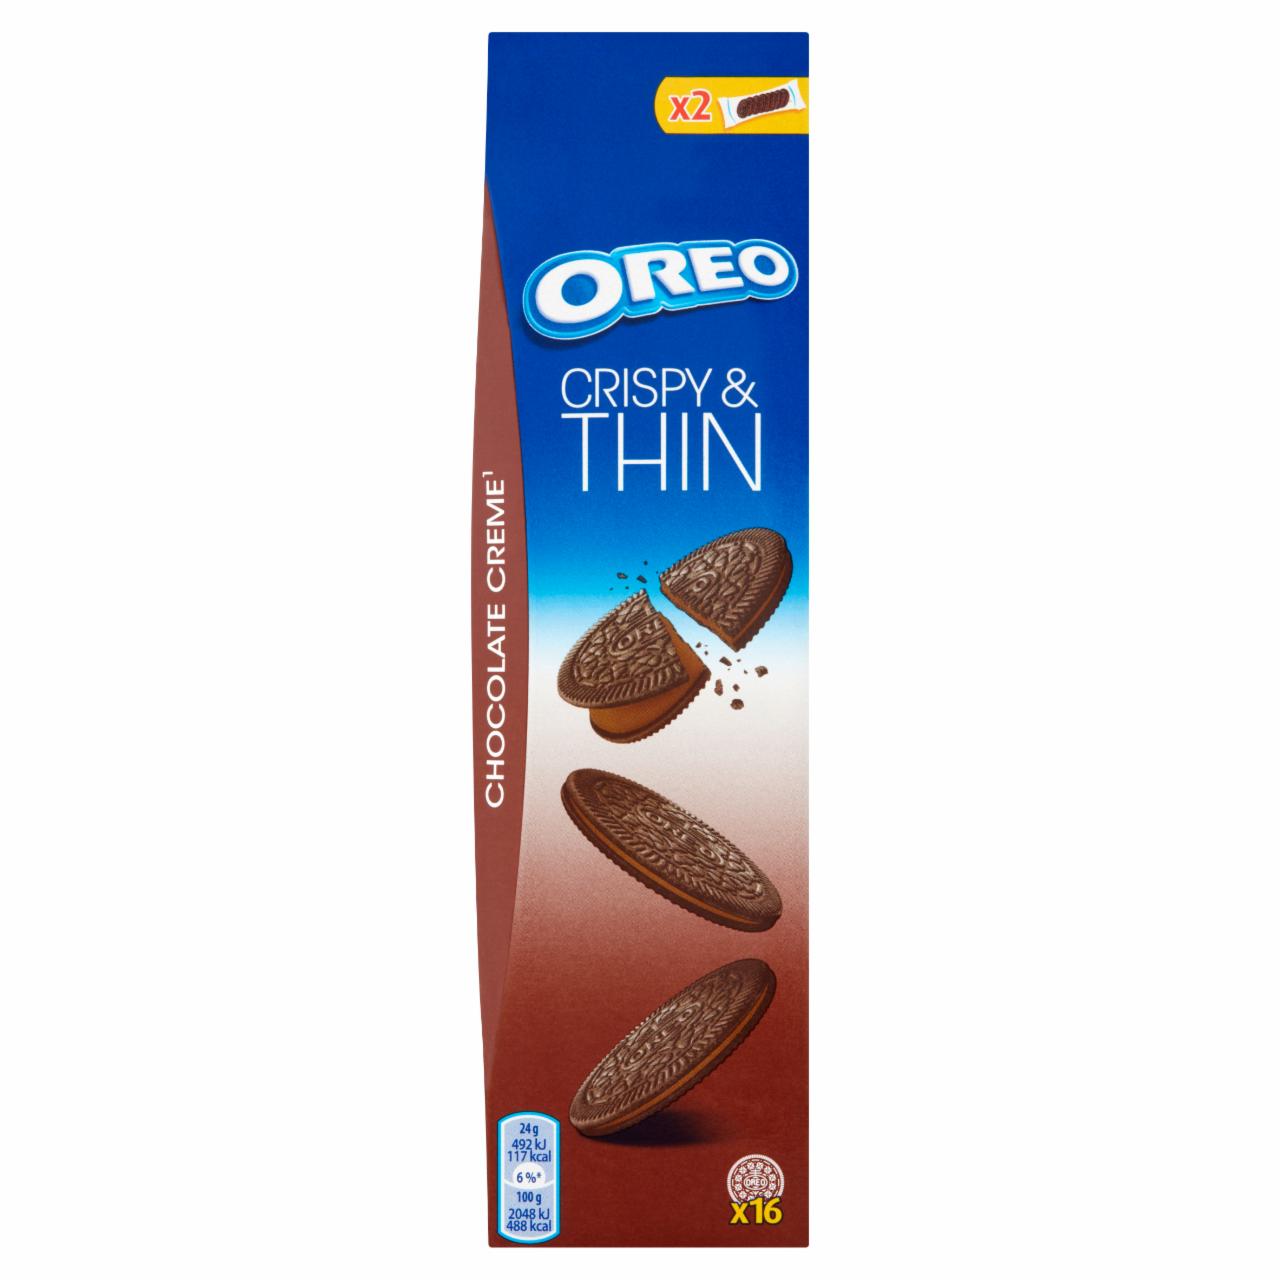 Zdjęcia - Oreo Crispy & Thin Ciastka kakaowe z nadzieniem o smaku czekoladowym 96 g (16 sztuk)